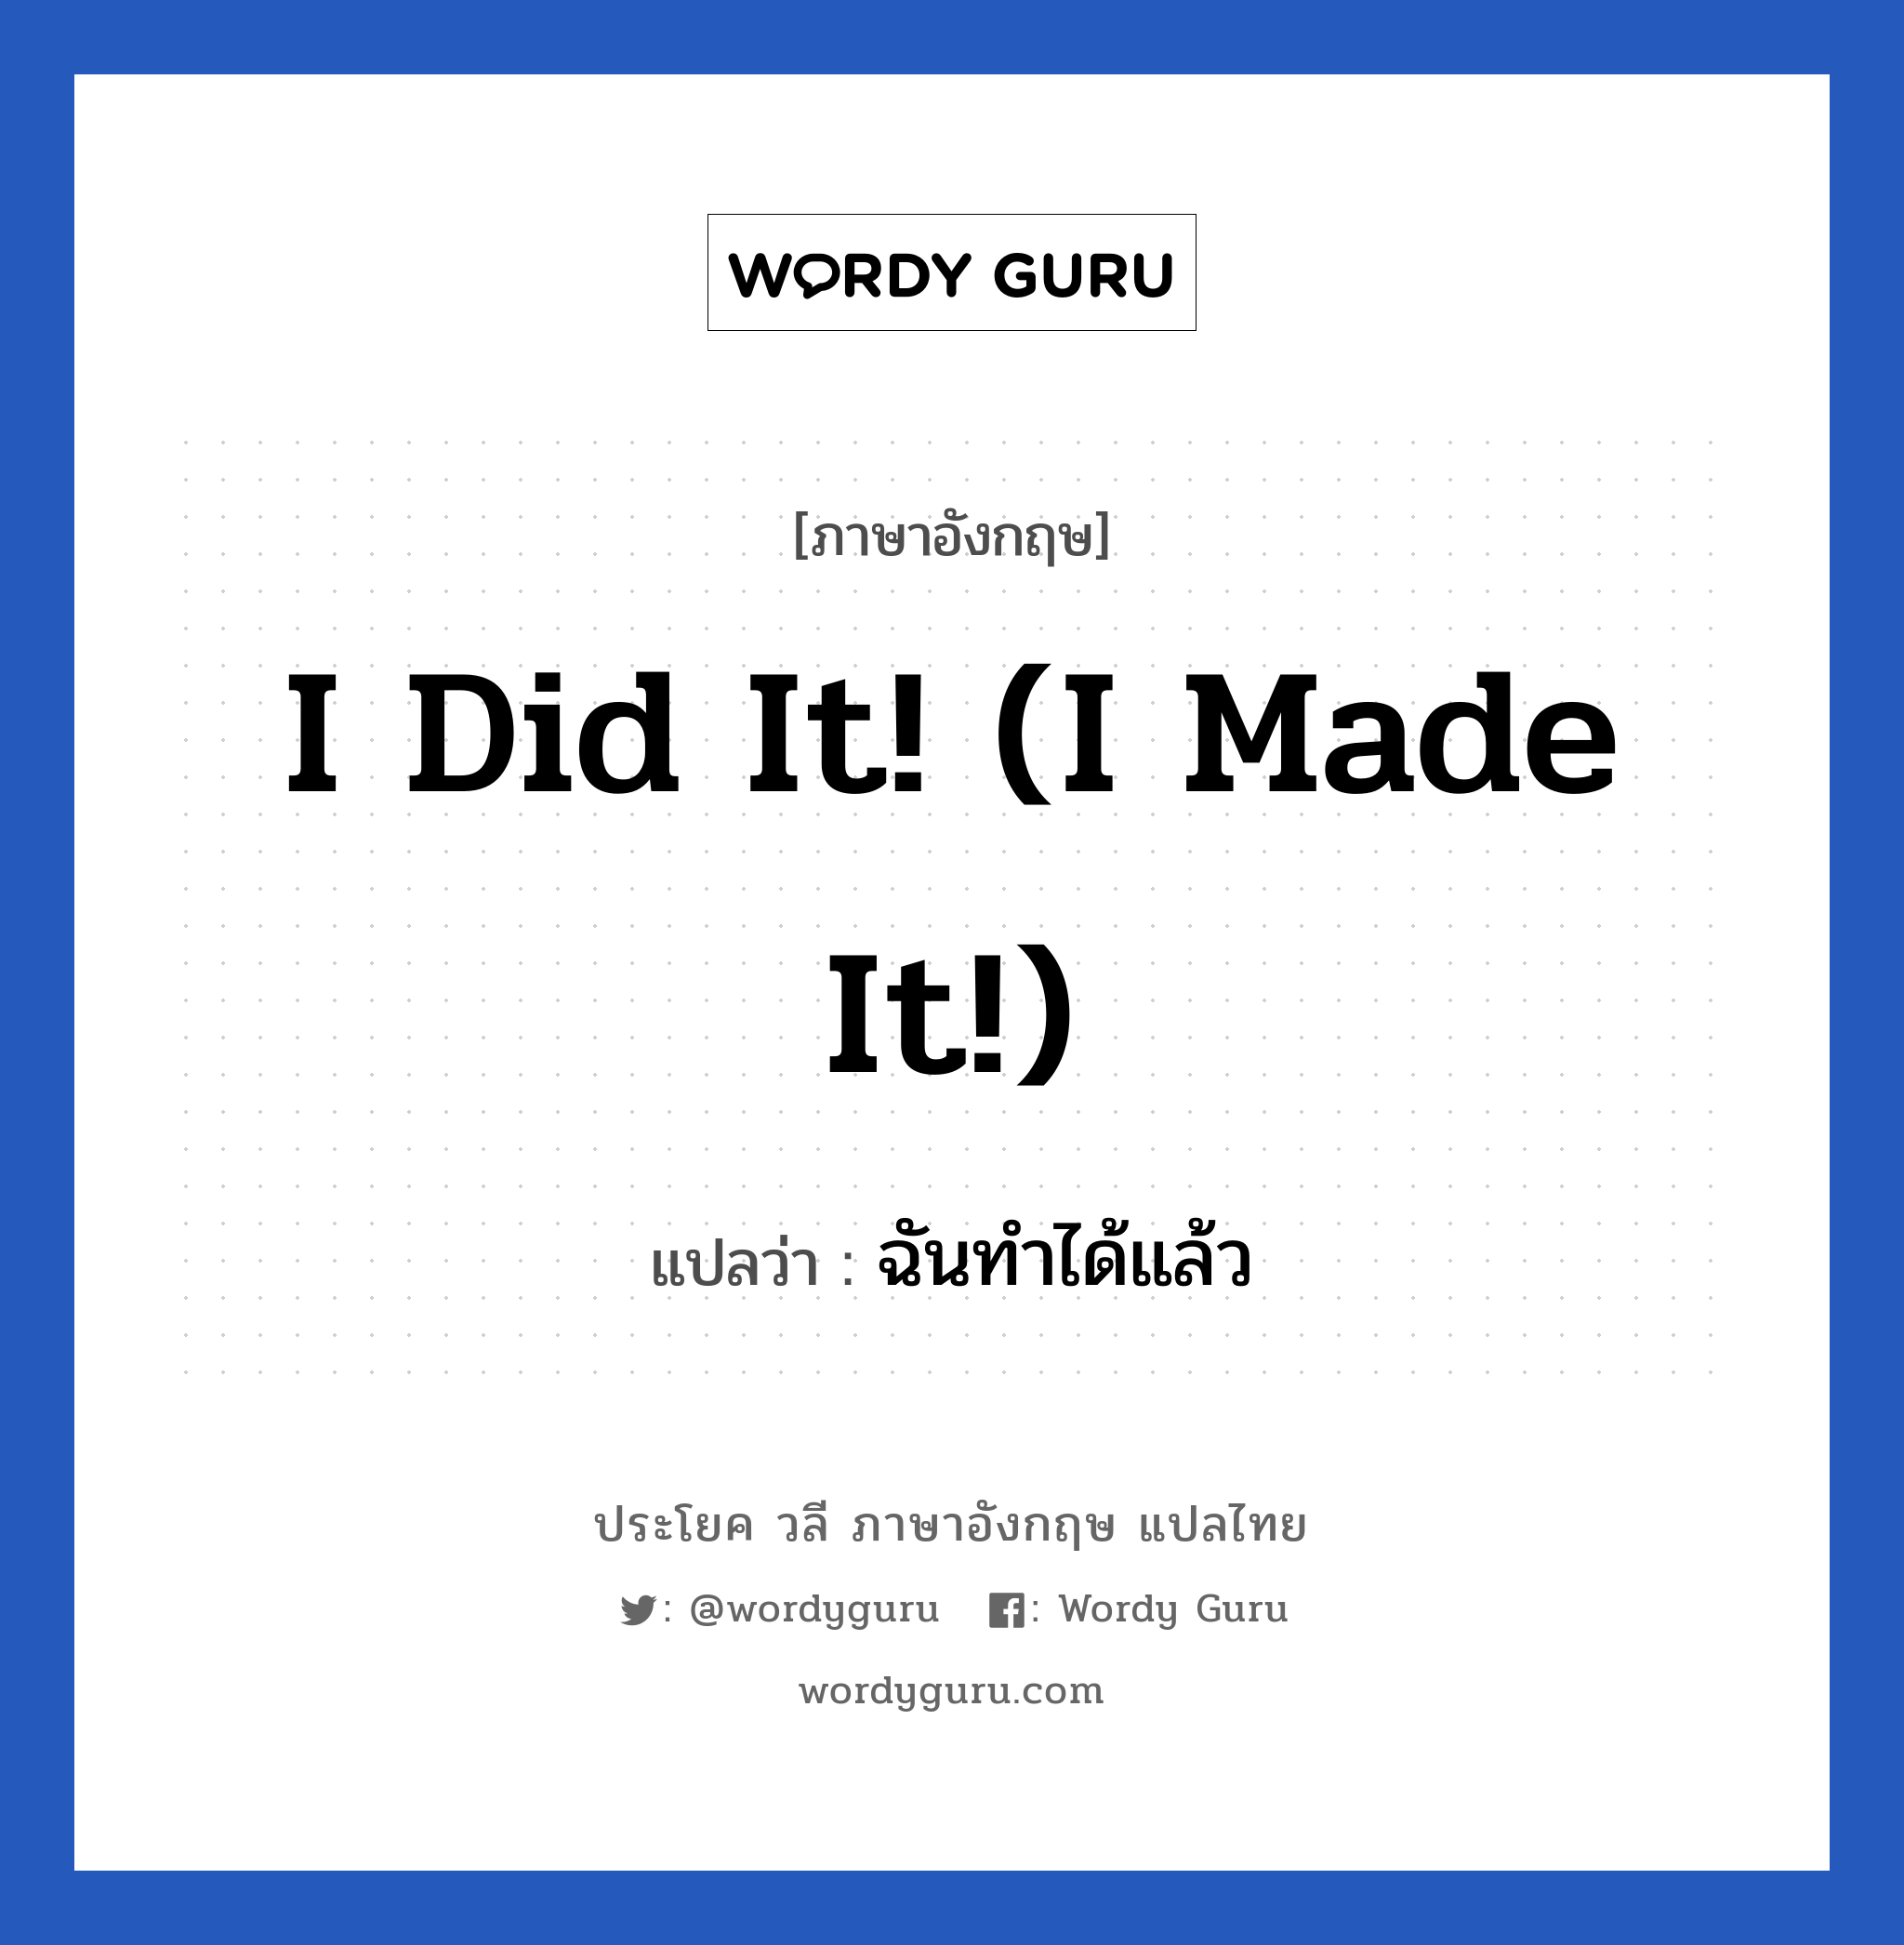 I did it! (I made it!) แปลว่า?, วลีภาษาอังกฤษ I did it! (I made it!) แปลว่า ฉันทำได้แล้ว